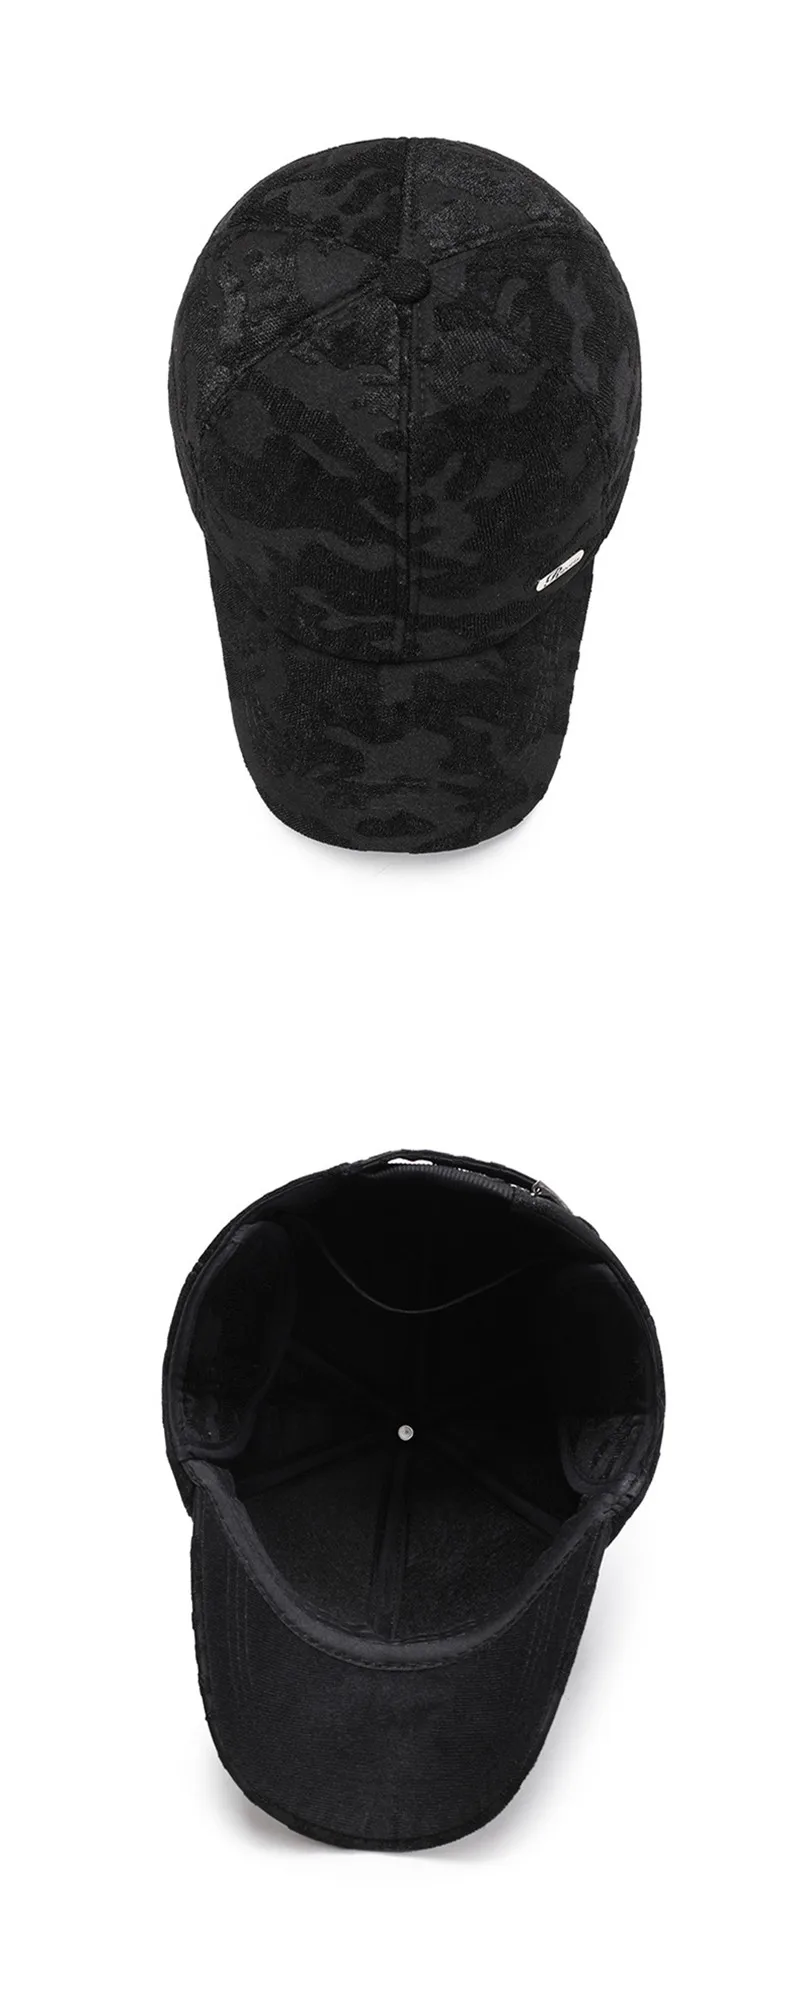 SILOQIN регулируемый размер зимние мужские бейсболки s толстые теплые модные спортивные наушники кепки для мужчин новая шляпа для отца среднего возраста